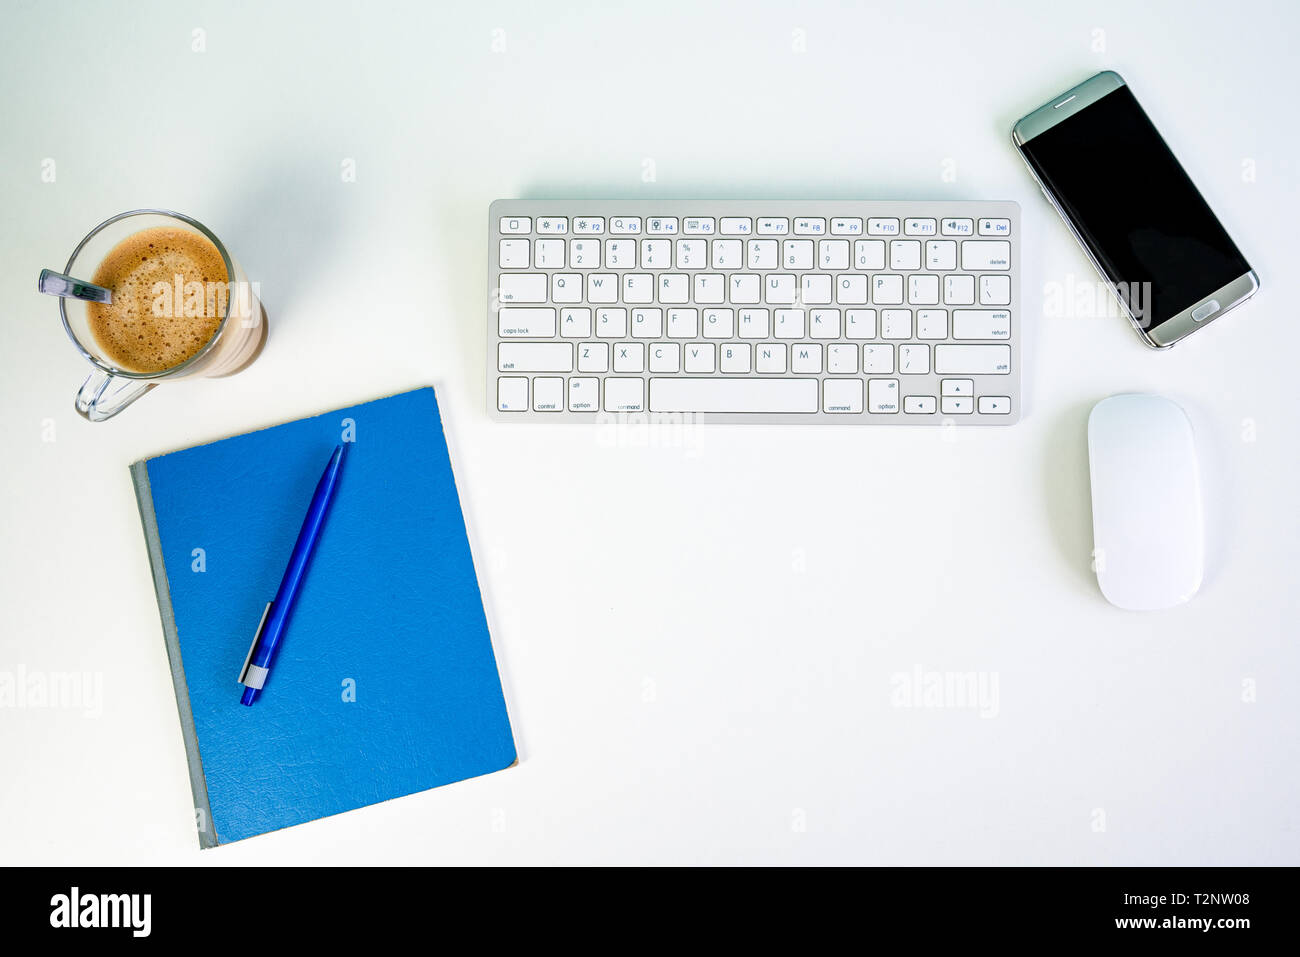 Ufficio bianco scrivania con una tastiera wireless e mouse, smartphone, tazza di caffè, matita e un blocco di scrittura Foto Stock